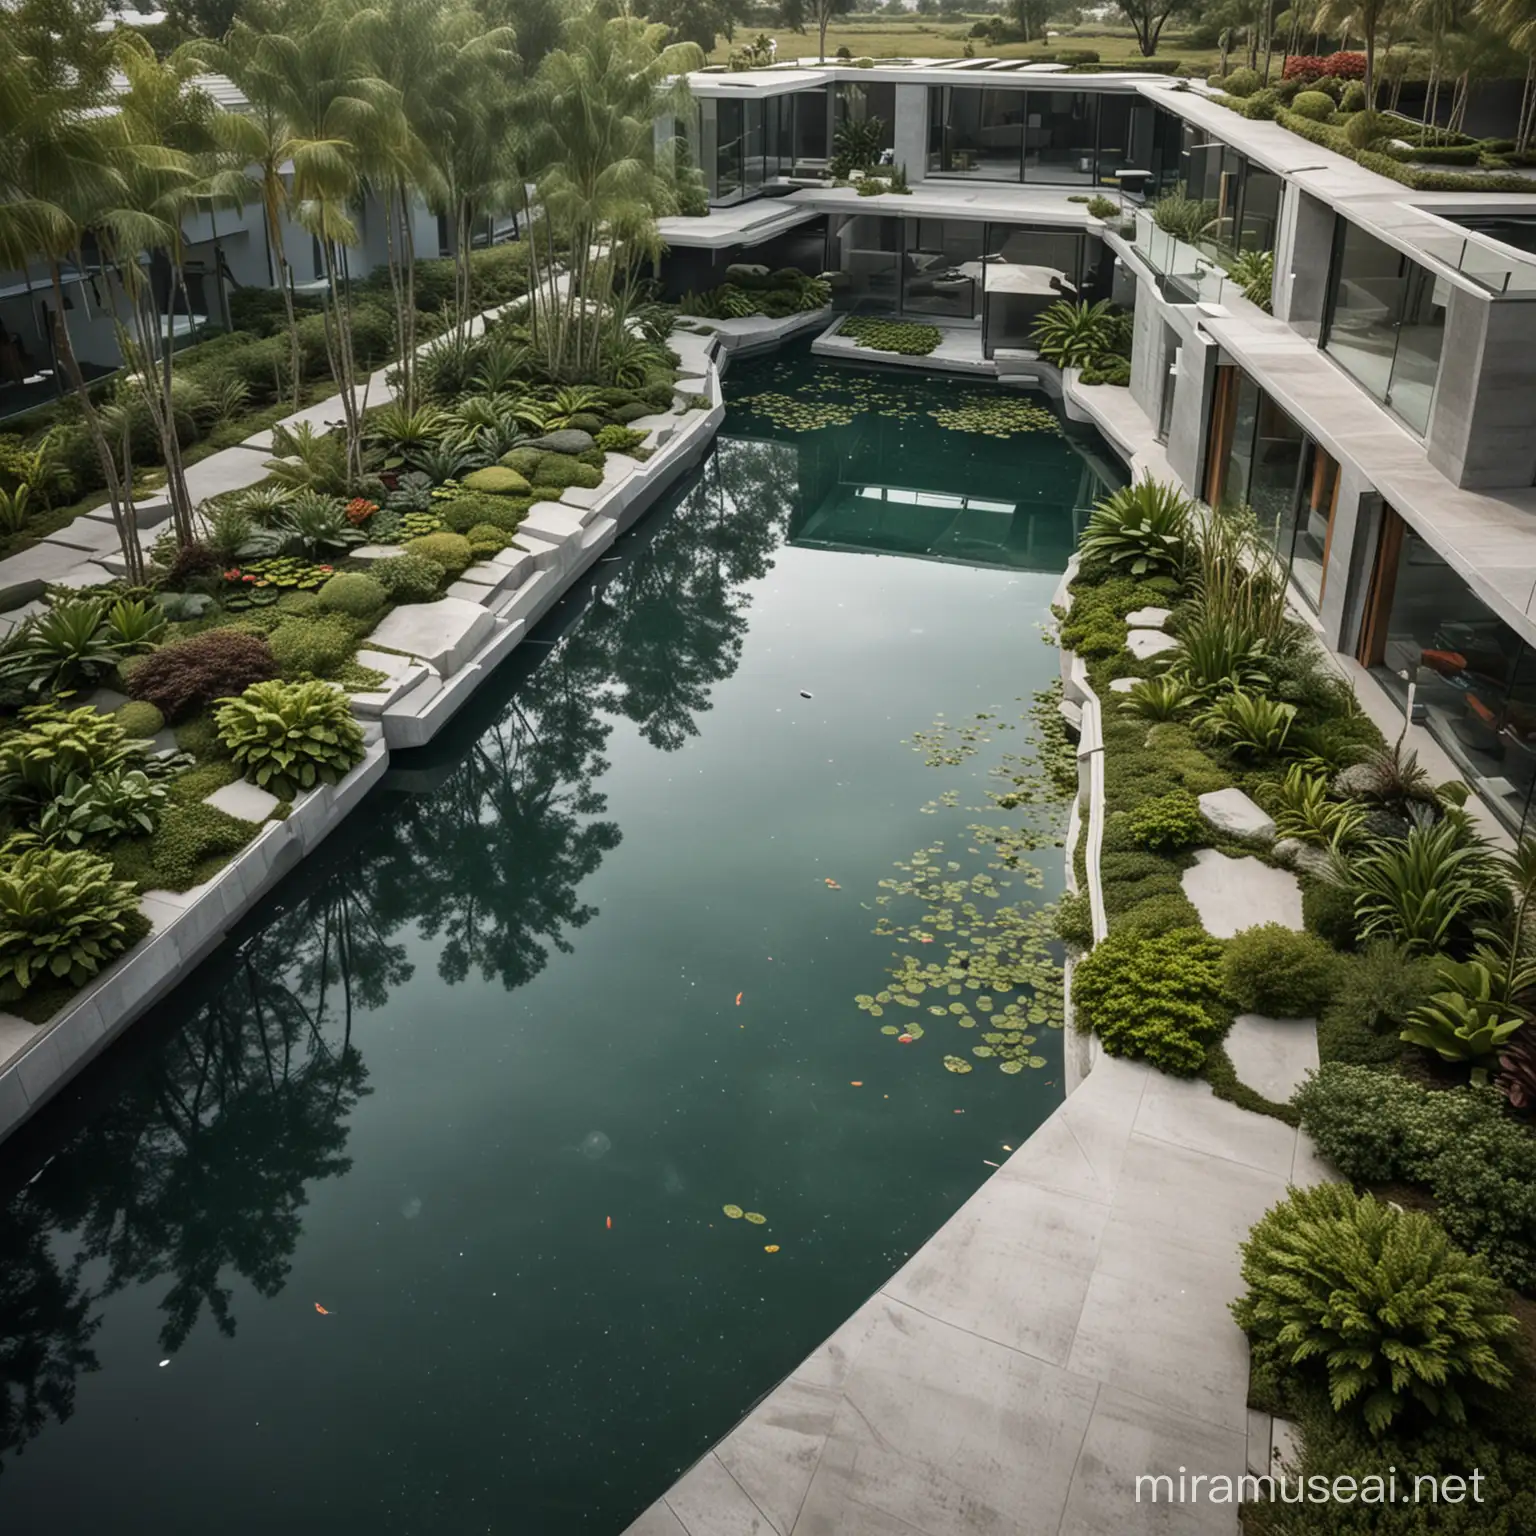 Futuristic Urban Commerce Vibrant Pond Cityscape